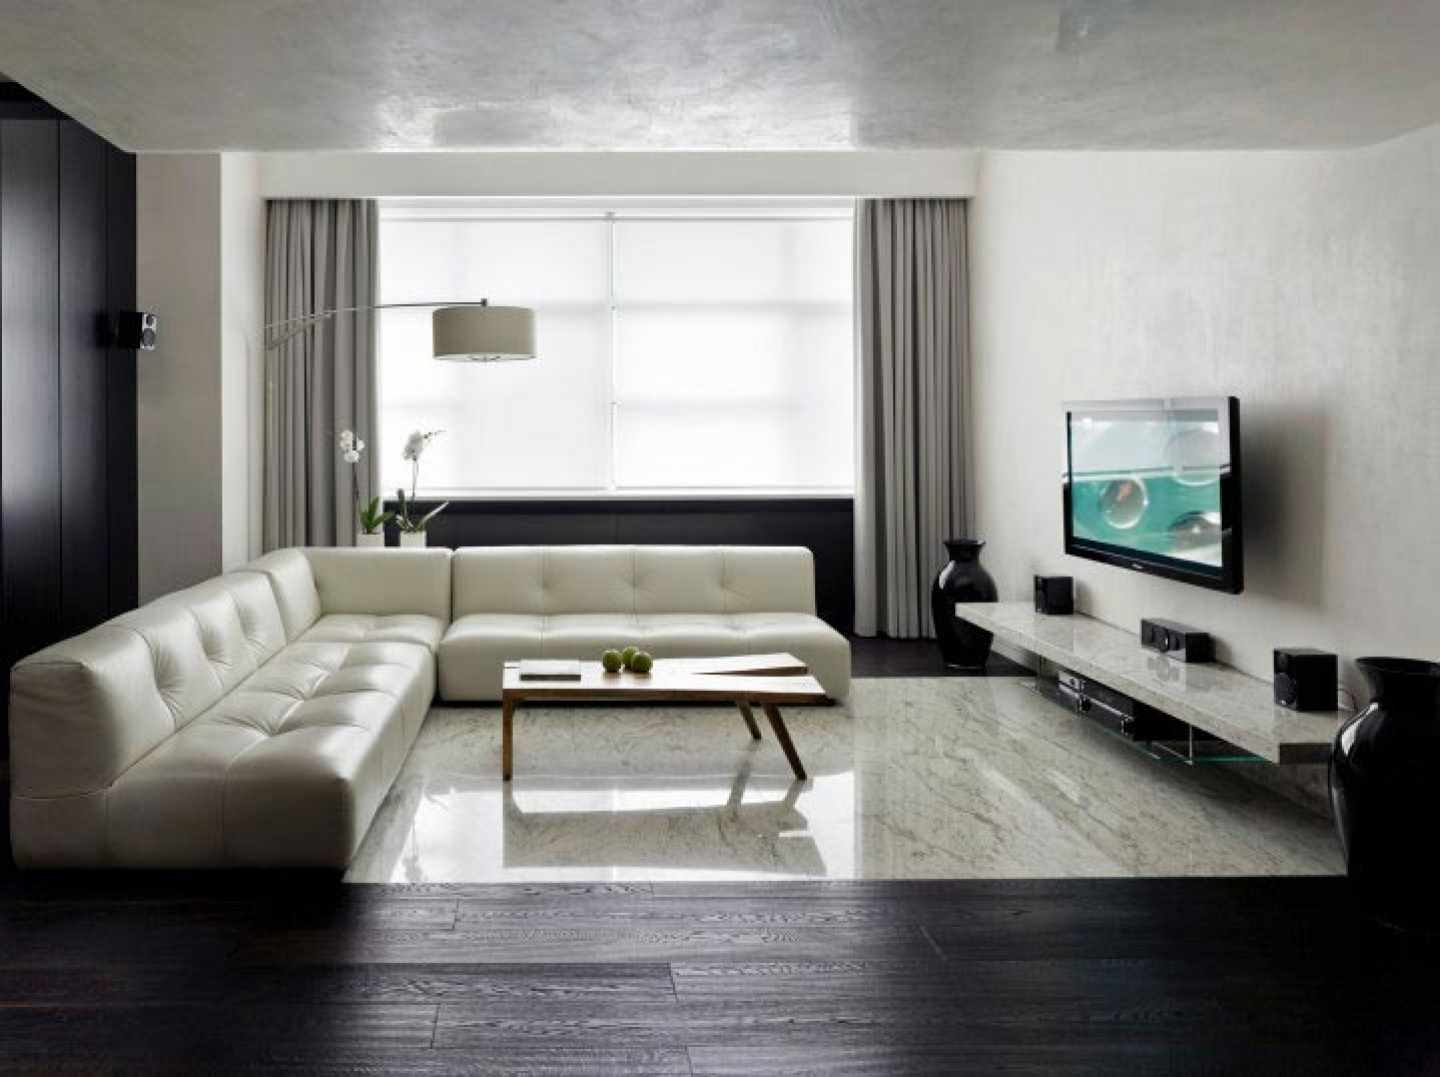 príklad použitia svetlého dizajnu obývacej izby v štýle minimalizmu